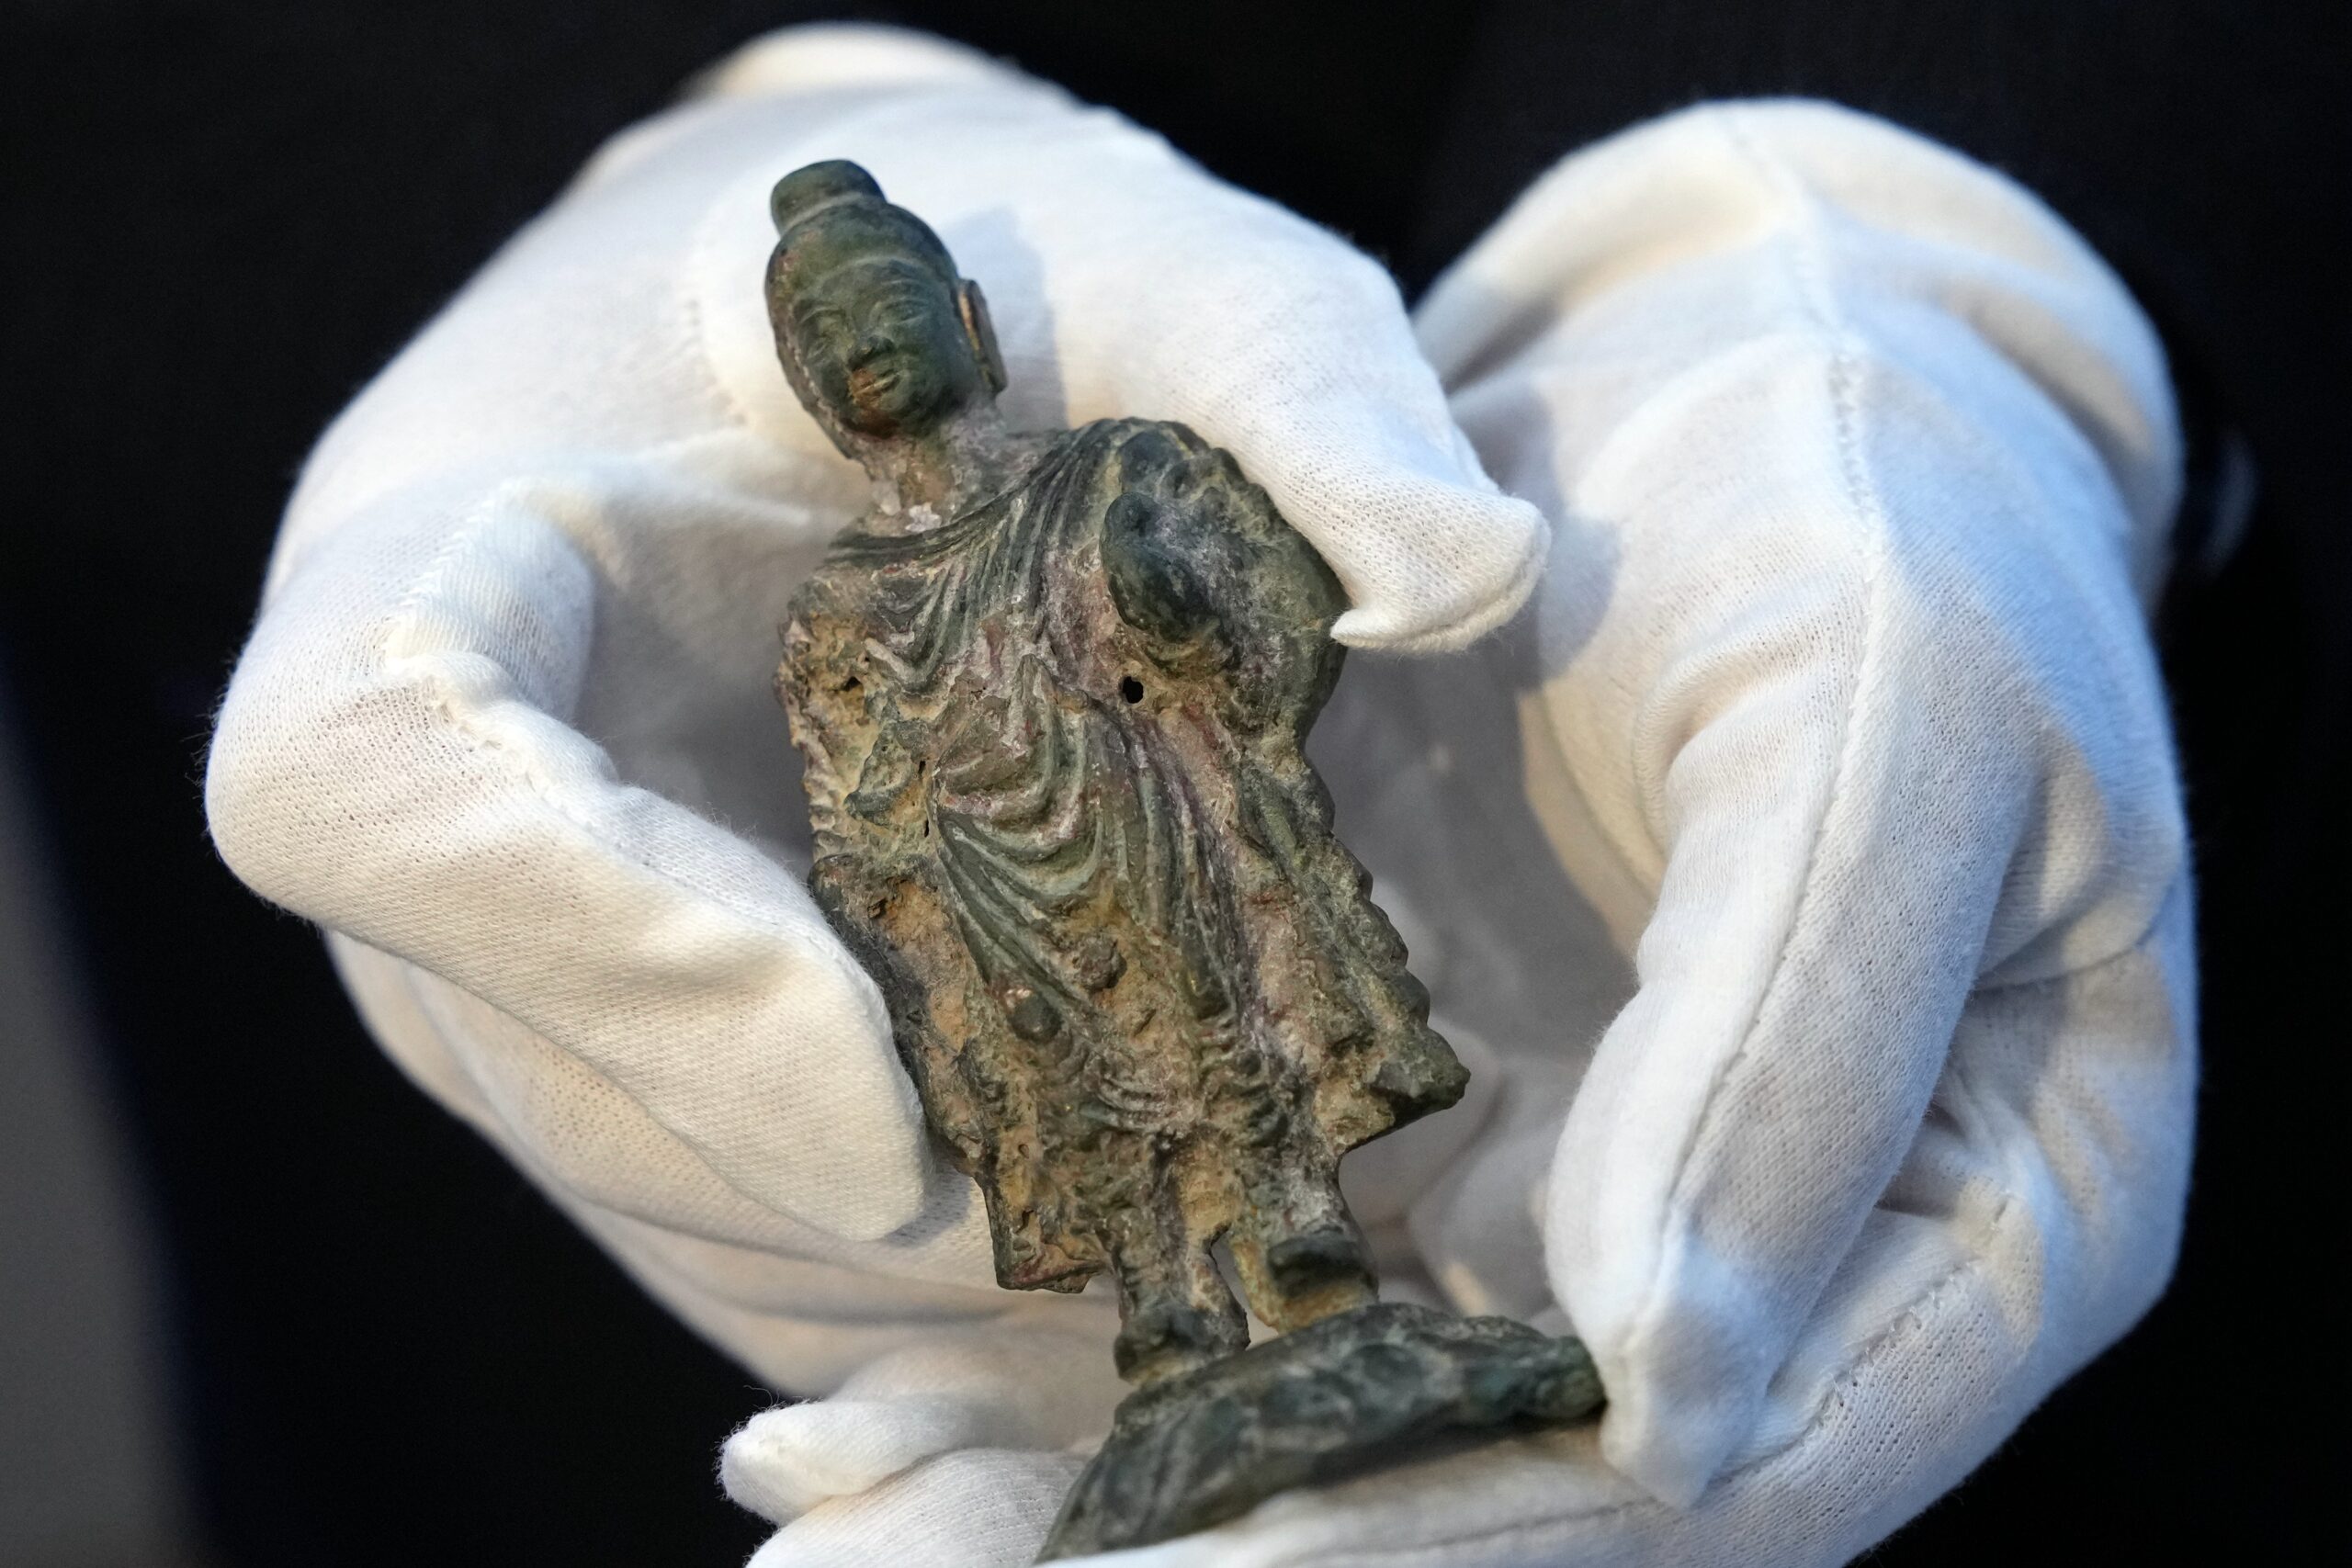 จีนพบ ‘พระพุทธรูปศากยมุนี’ ยุคราชวงศ์ฮั่น ทำจากโลหะเจือ